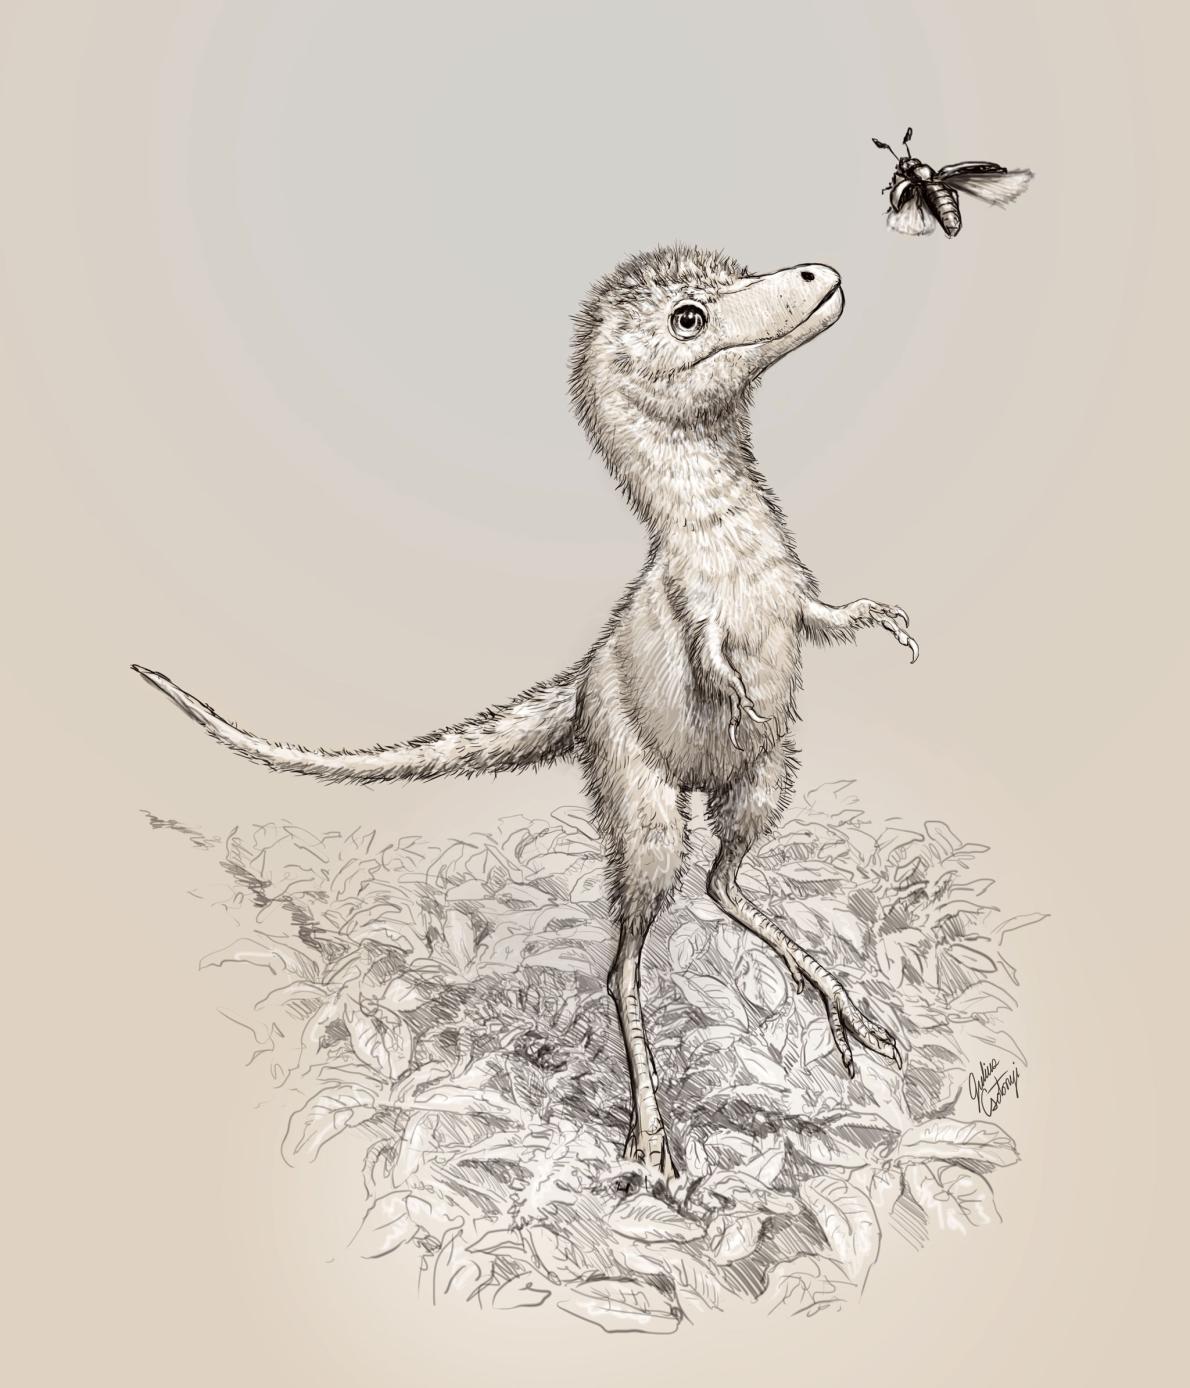 孵化前のティラノサウルス類の化石を発見 初 ナショナルジオグラフィック日本版サイト